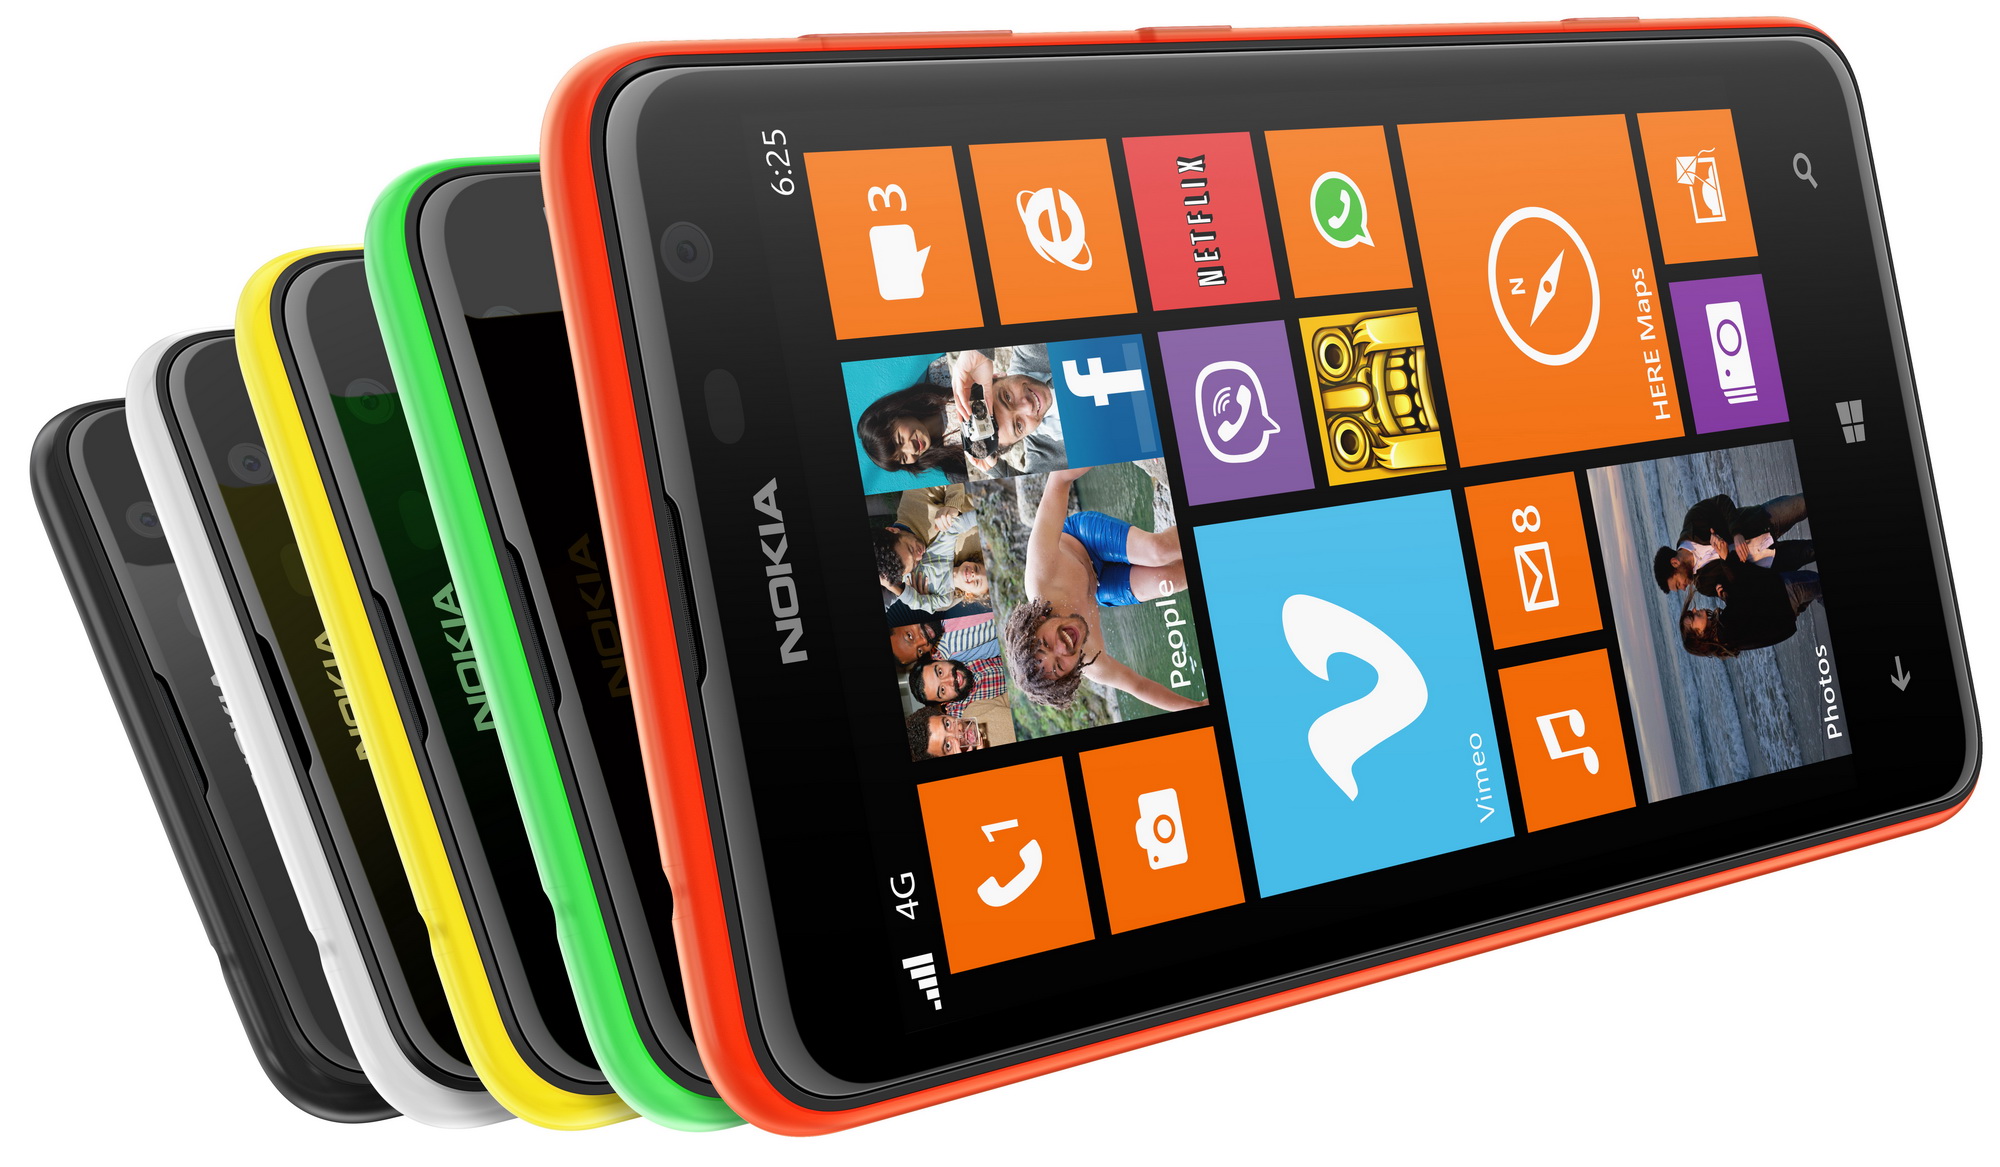 Nokia Lumia 520, 625, 820 e 720: Migliori prezzi, offerte e sconti Amazon (Maggio 2014)